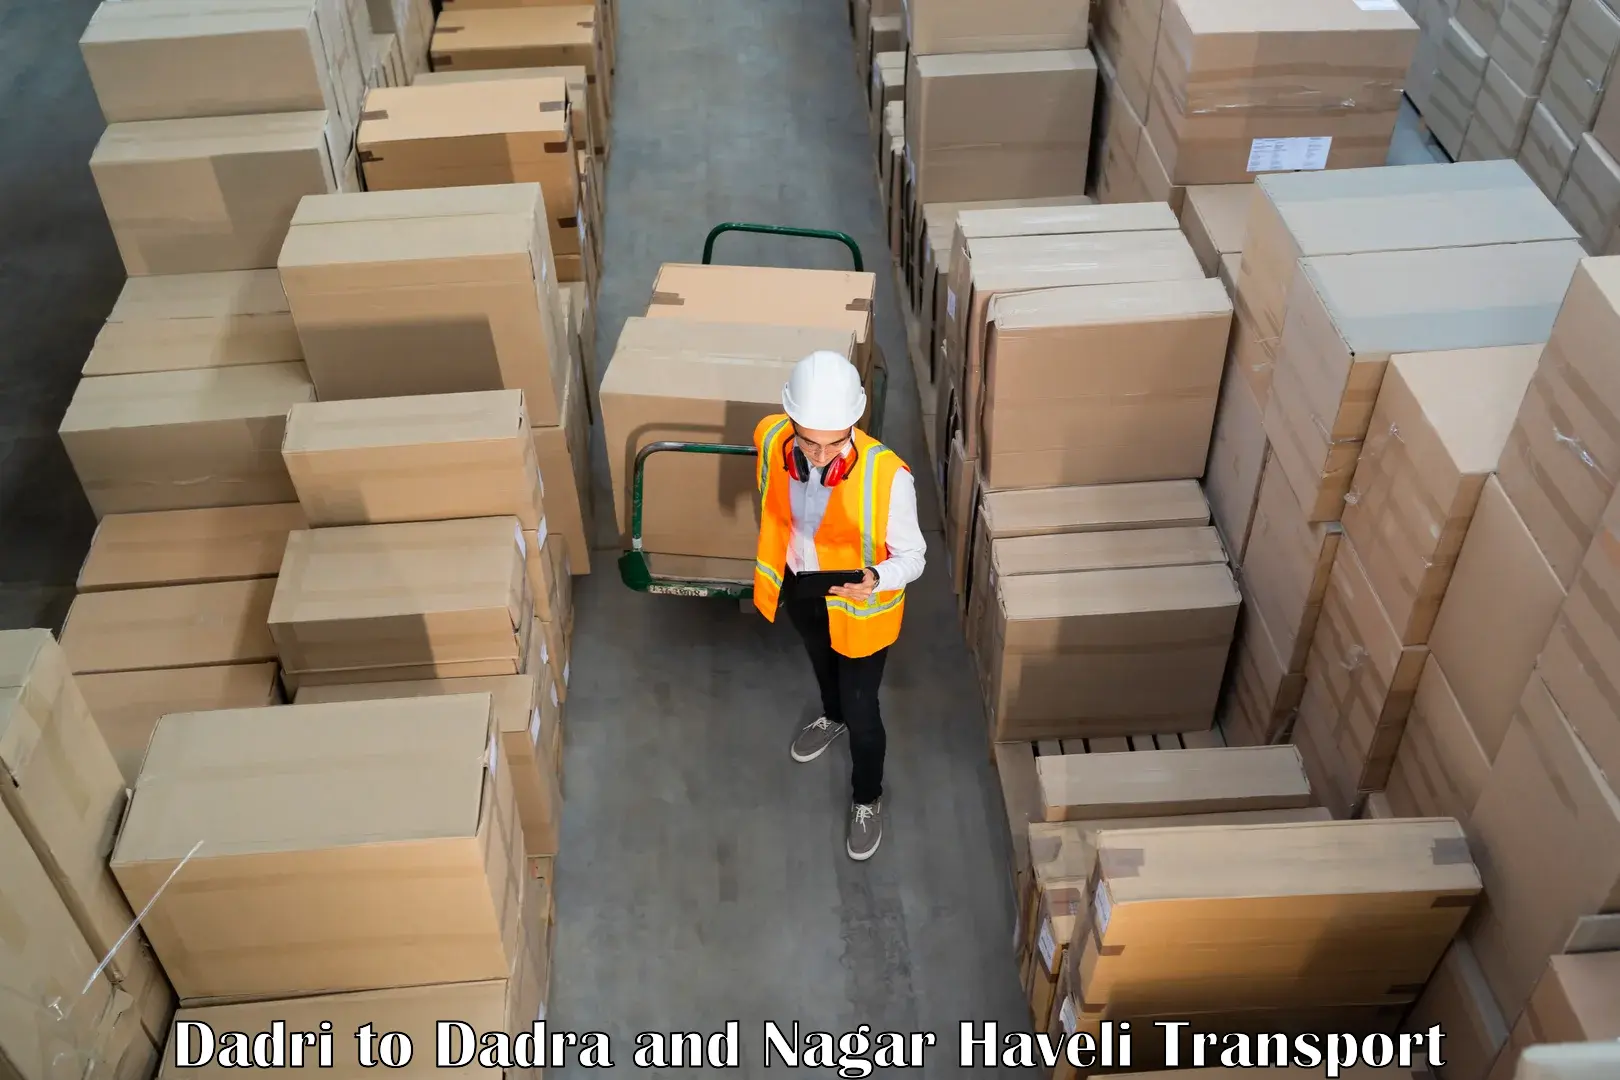 Shipping partner Dadri to Silvassa